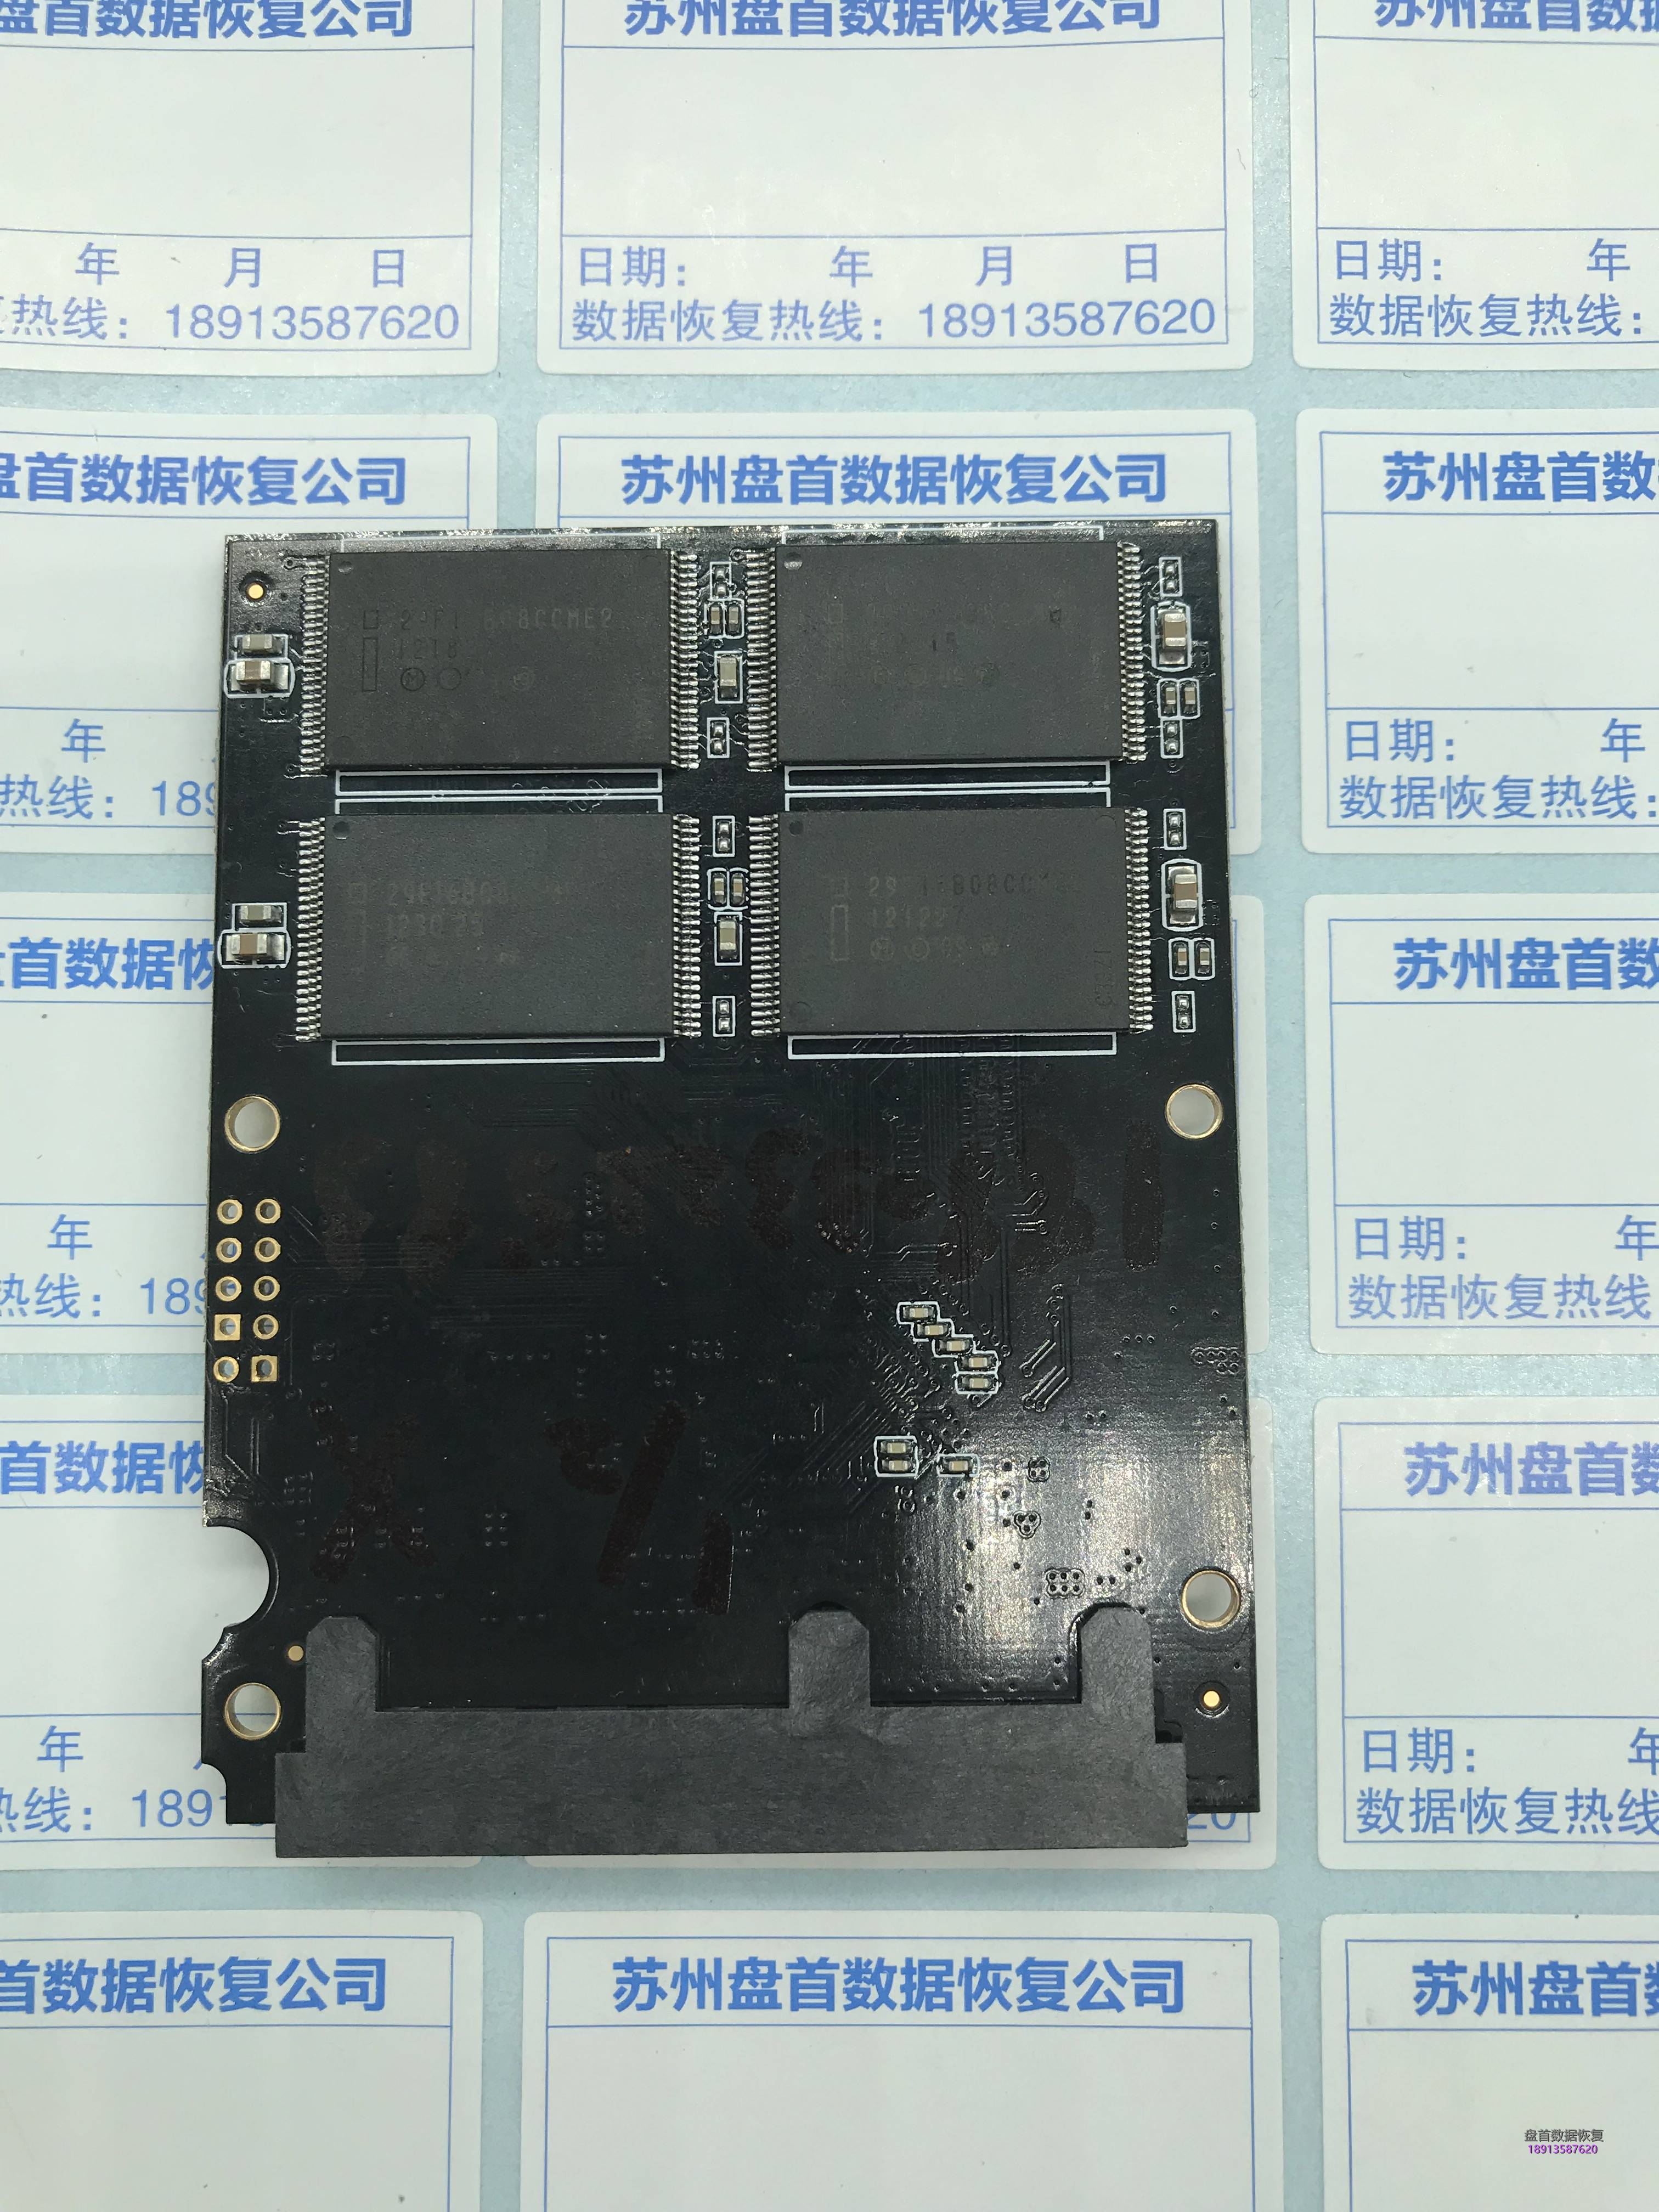 二次恢复成功台电S500固态硬盘SM2246XT主控使用PC3000 SSD读加载LDR报FLASH芯片通道错误